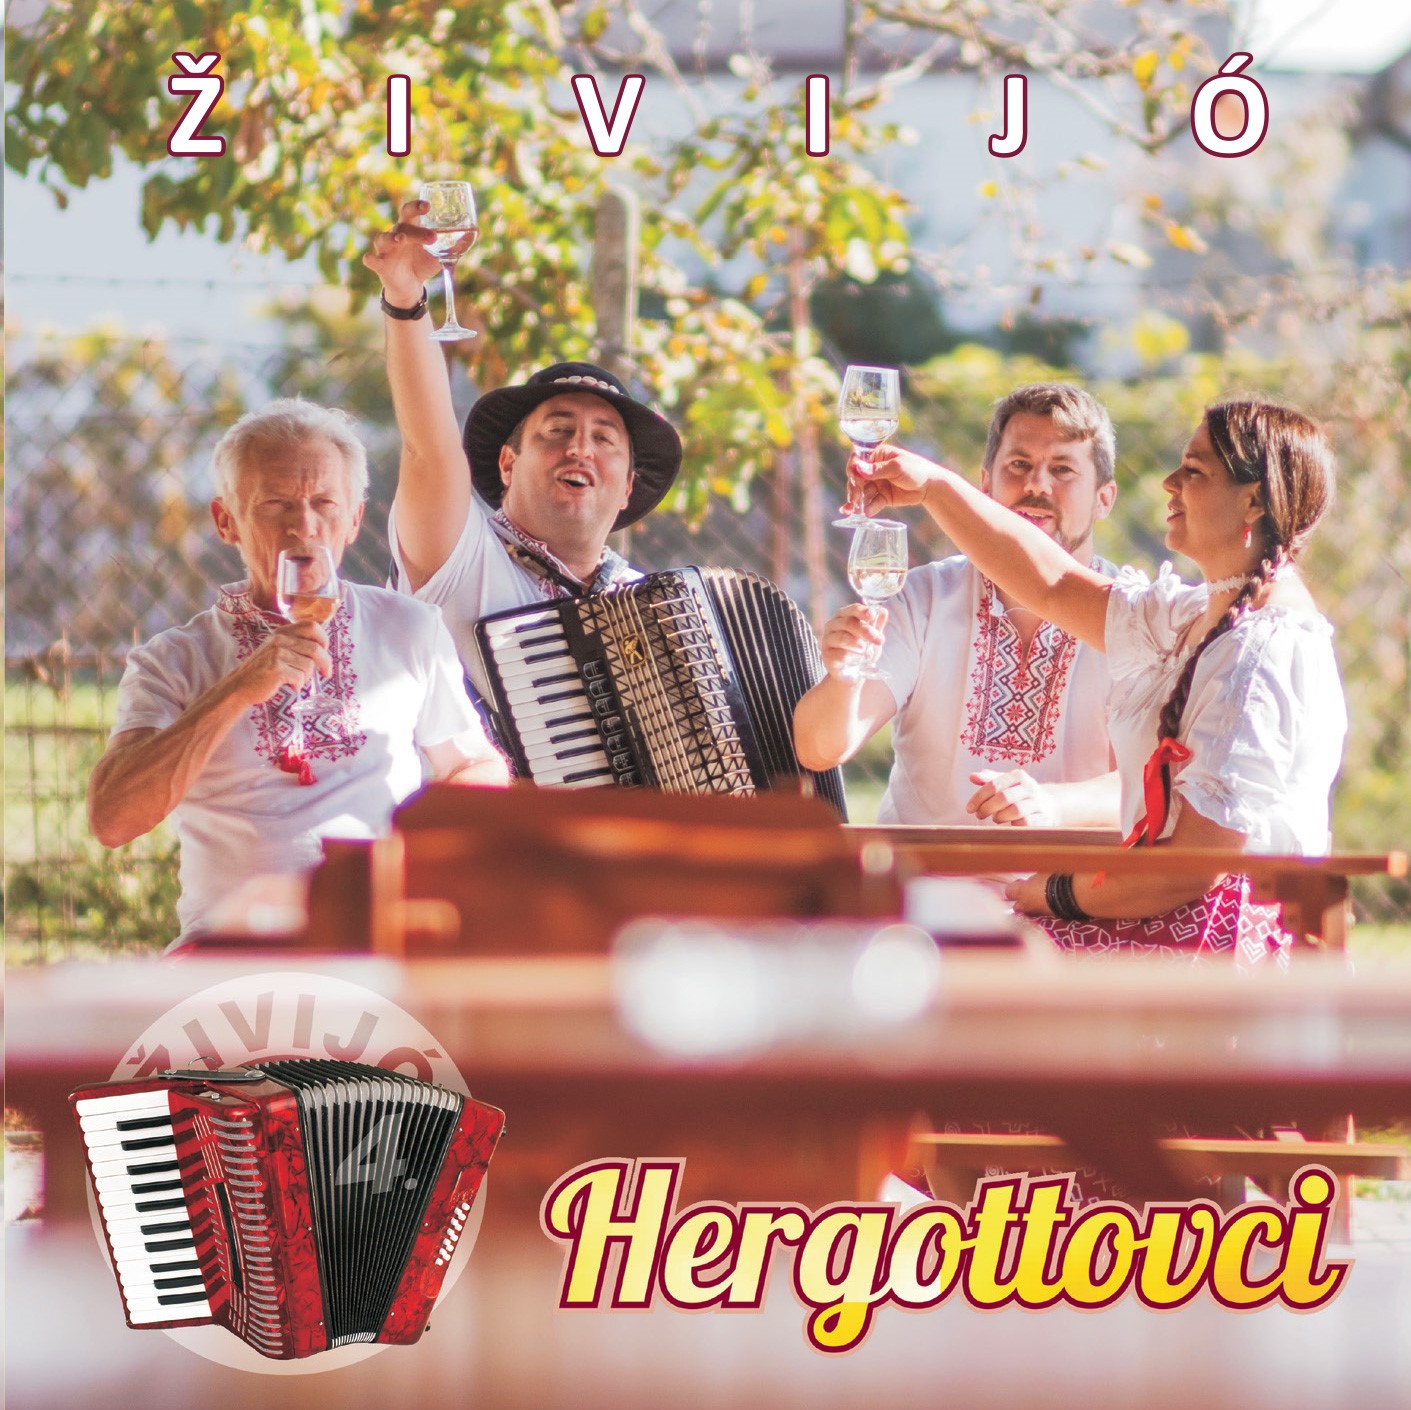 Hergottovci - Živijó